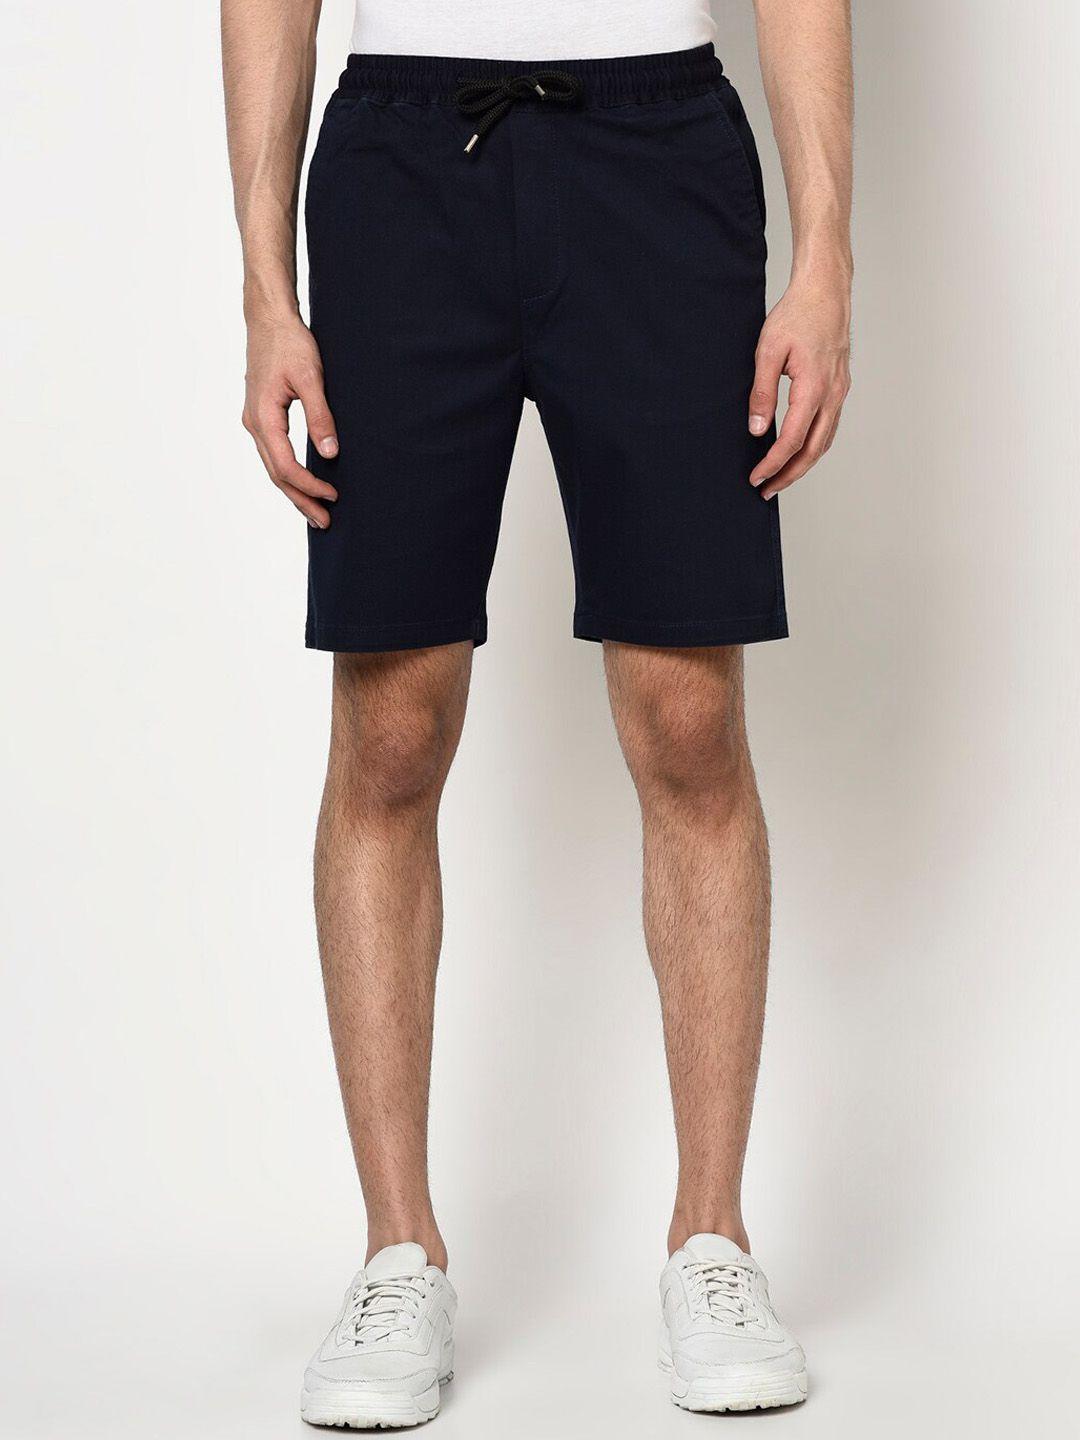 peppyzone men shorts